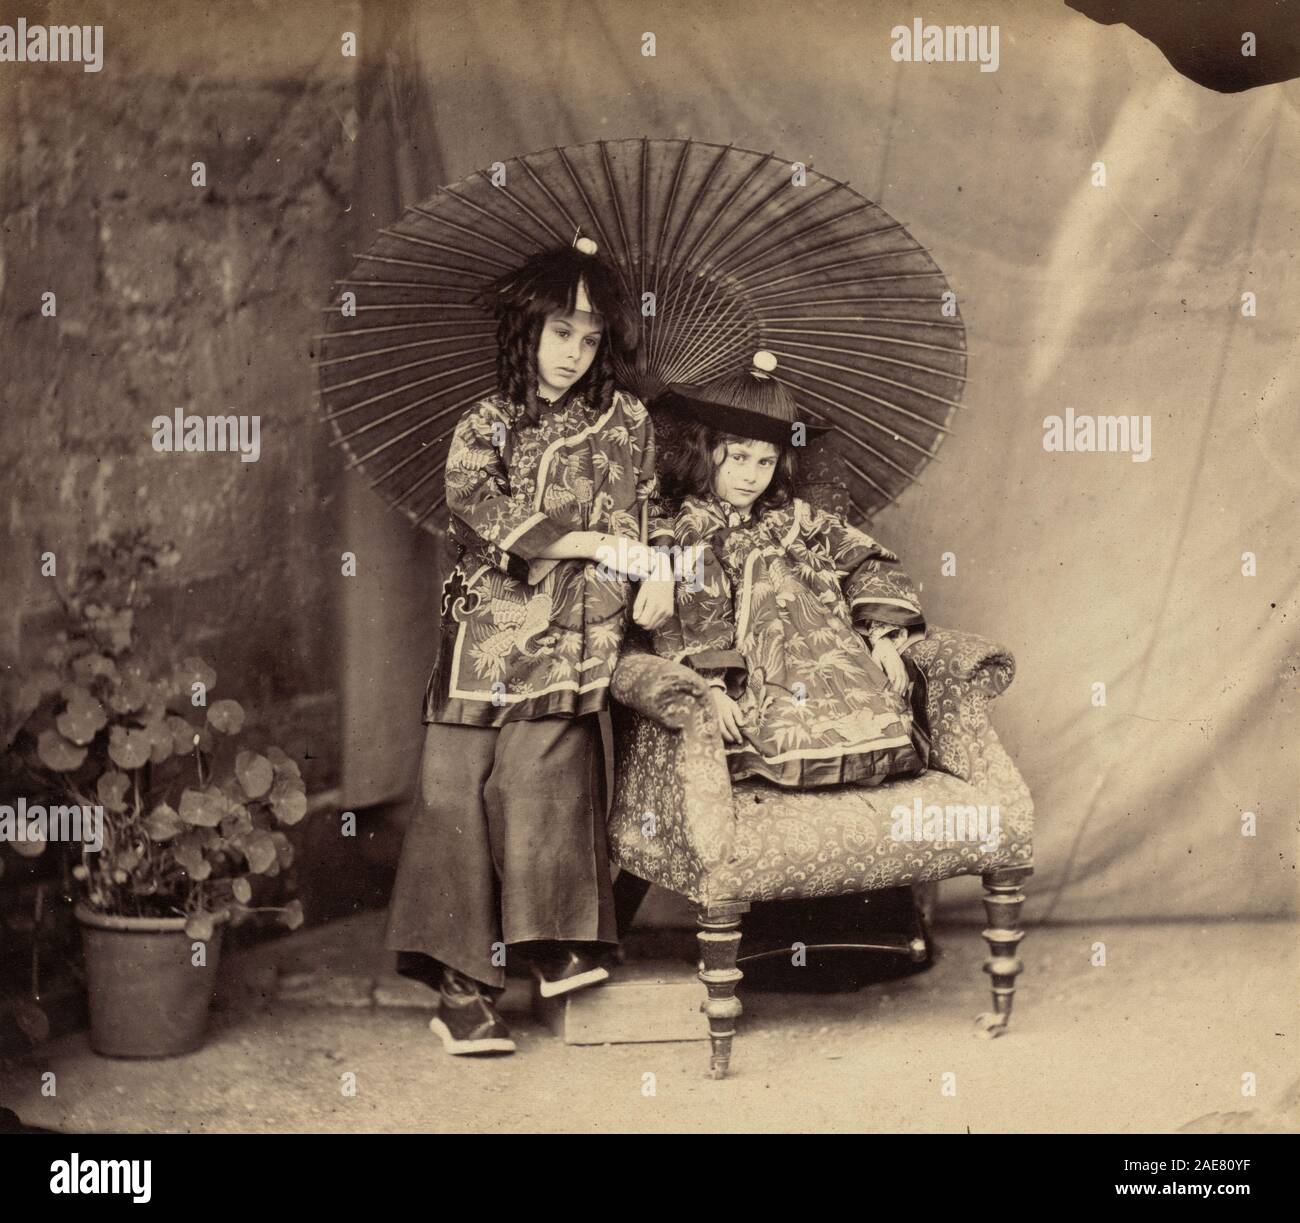 Lorina und Alice Liddell in der chinesischen Kleid; 1860 Datum Charles Lutwidge Dodgson (Lewis Carroll), Lorina und Alice Liddell in der chinesischen Kleid, 1860 Stockfoto